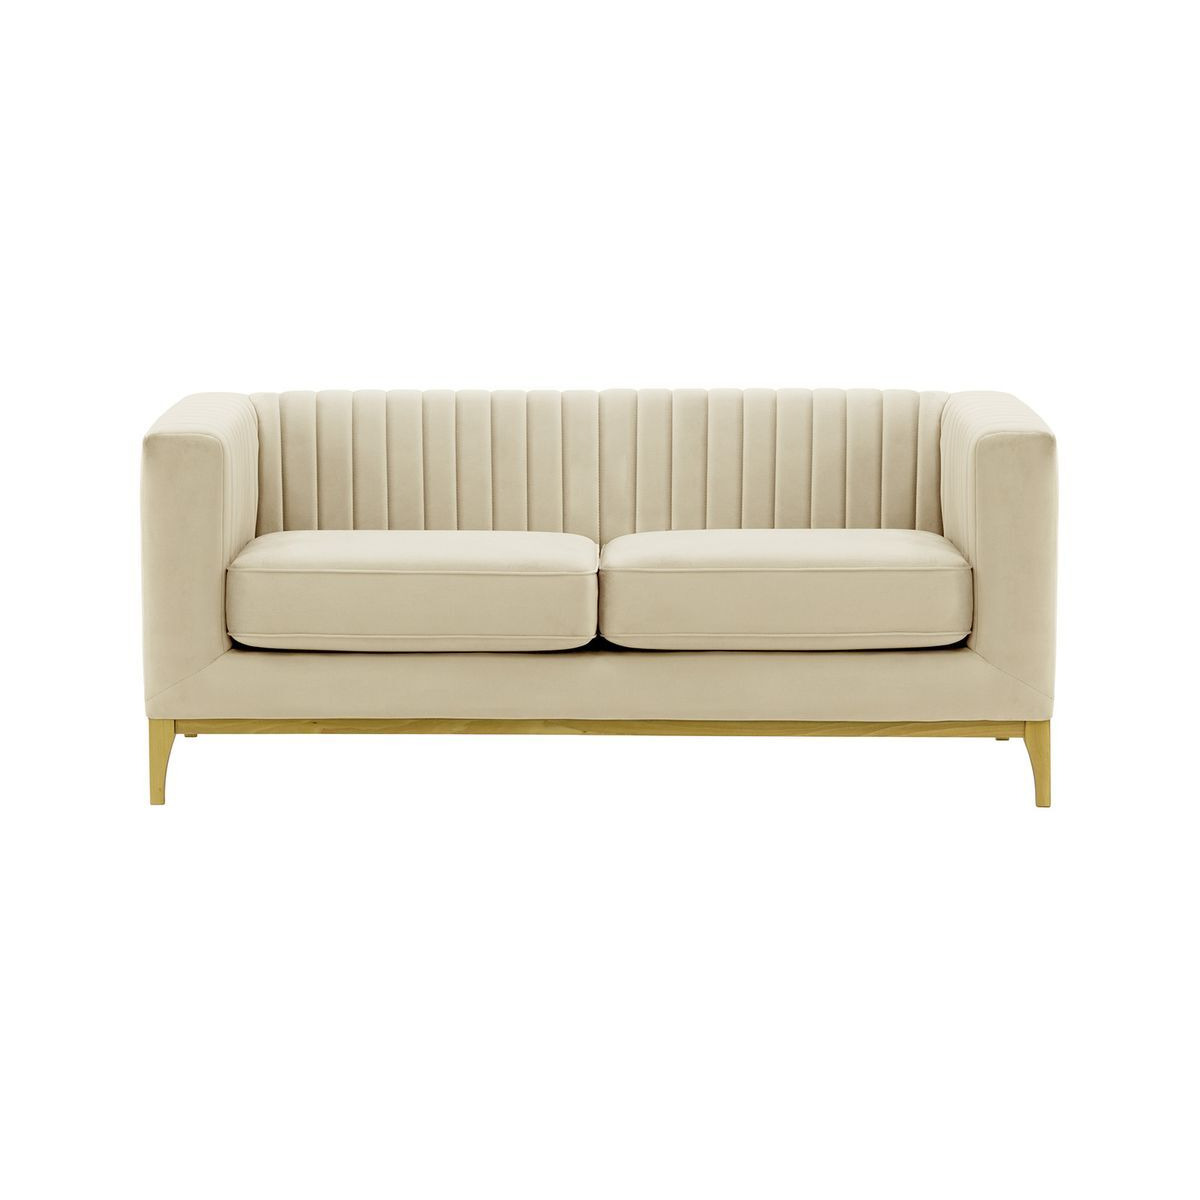 Slender Wood 2 Seater Sofa, light beige, Leg colour: like oak - image 1